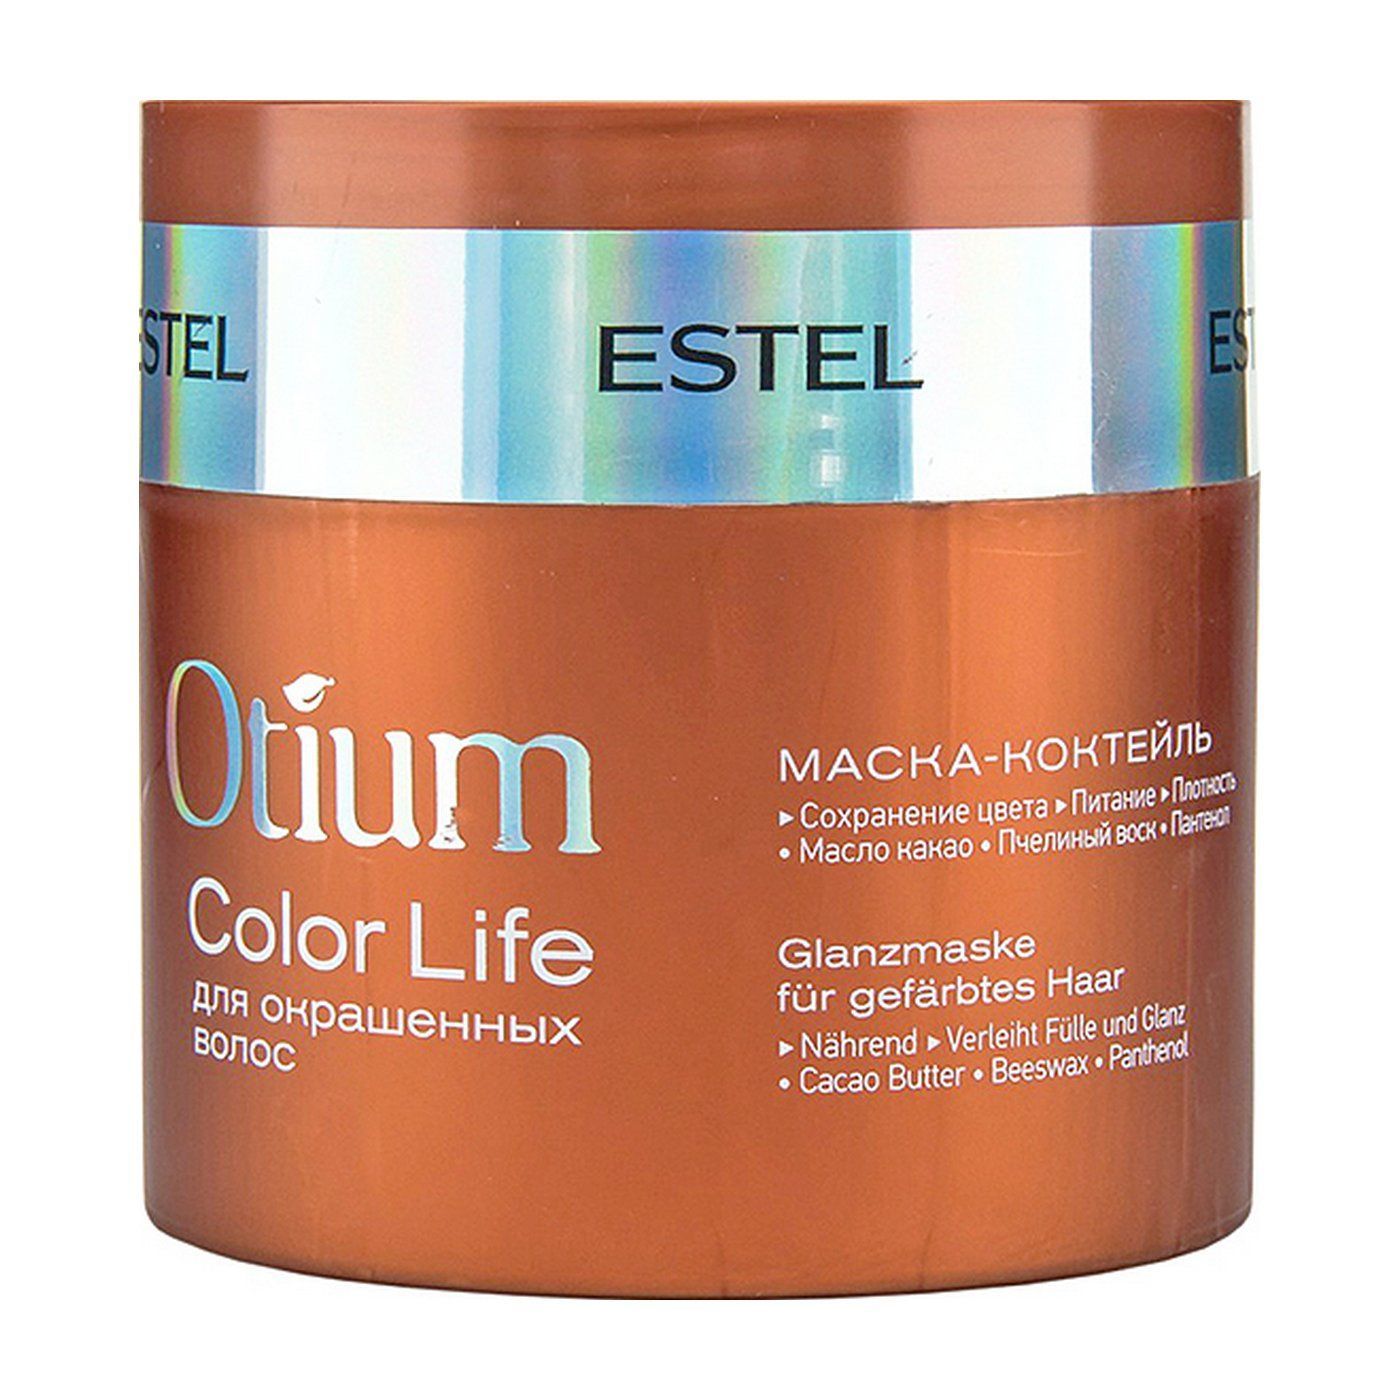 Эстель для окрашенных волос. Маска-коктейль для окрашенных волос Otium Color Life, 300 мл. Estel Otium Color Life маска для окрашенных волос, 300 мл.. Маска-коктейль для окрашенных волос Эстель Otium Color Life 300мл. Маска коктейль для окрашенных волос Estel Otium Color Life 300мл.